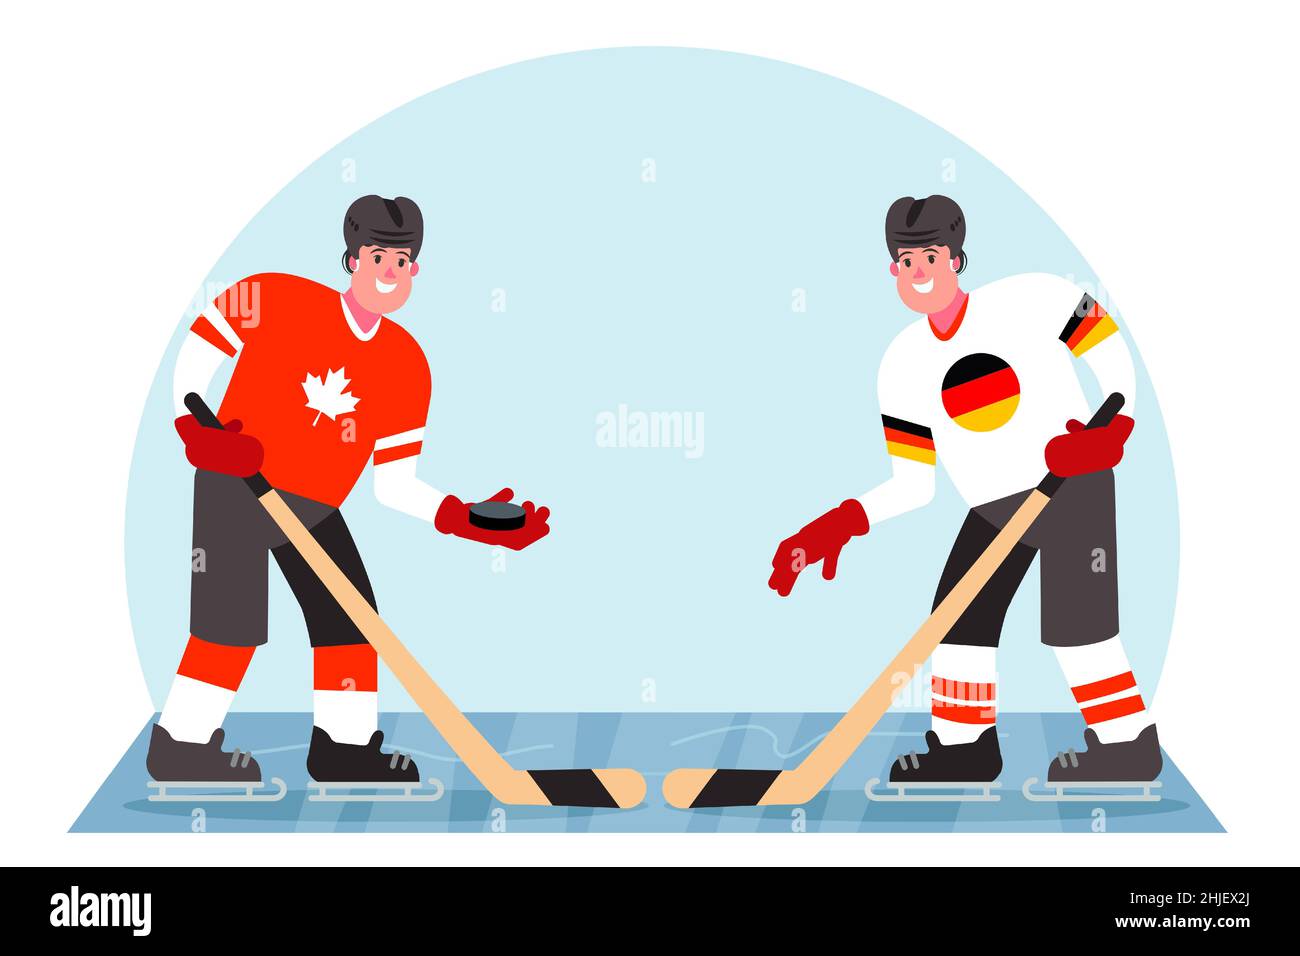 Eishockeyspieler. Wettbewerb zwischen Kanada und Deutschland. Vektorgrafik in einem flachen Stil. Stock Vektor